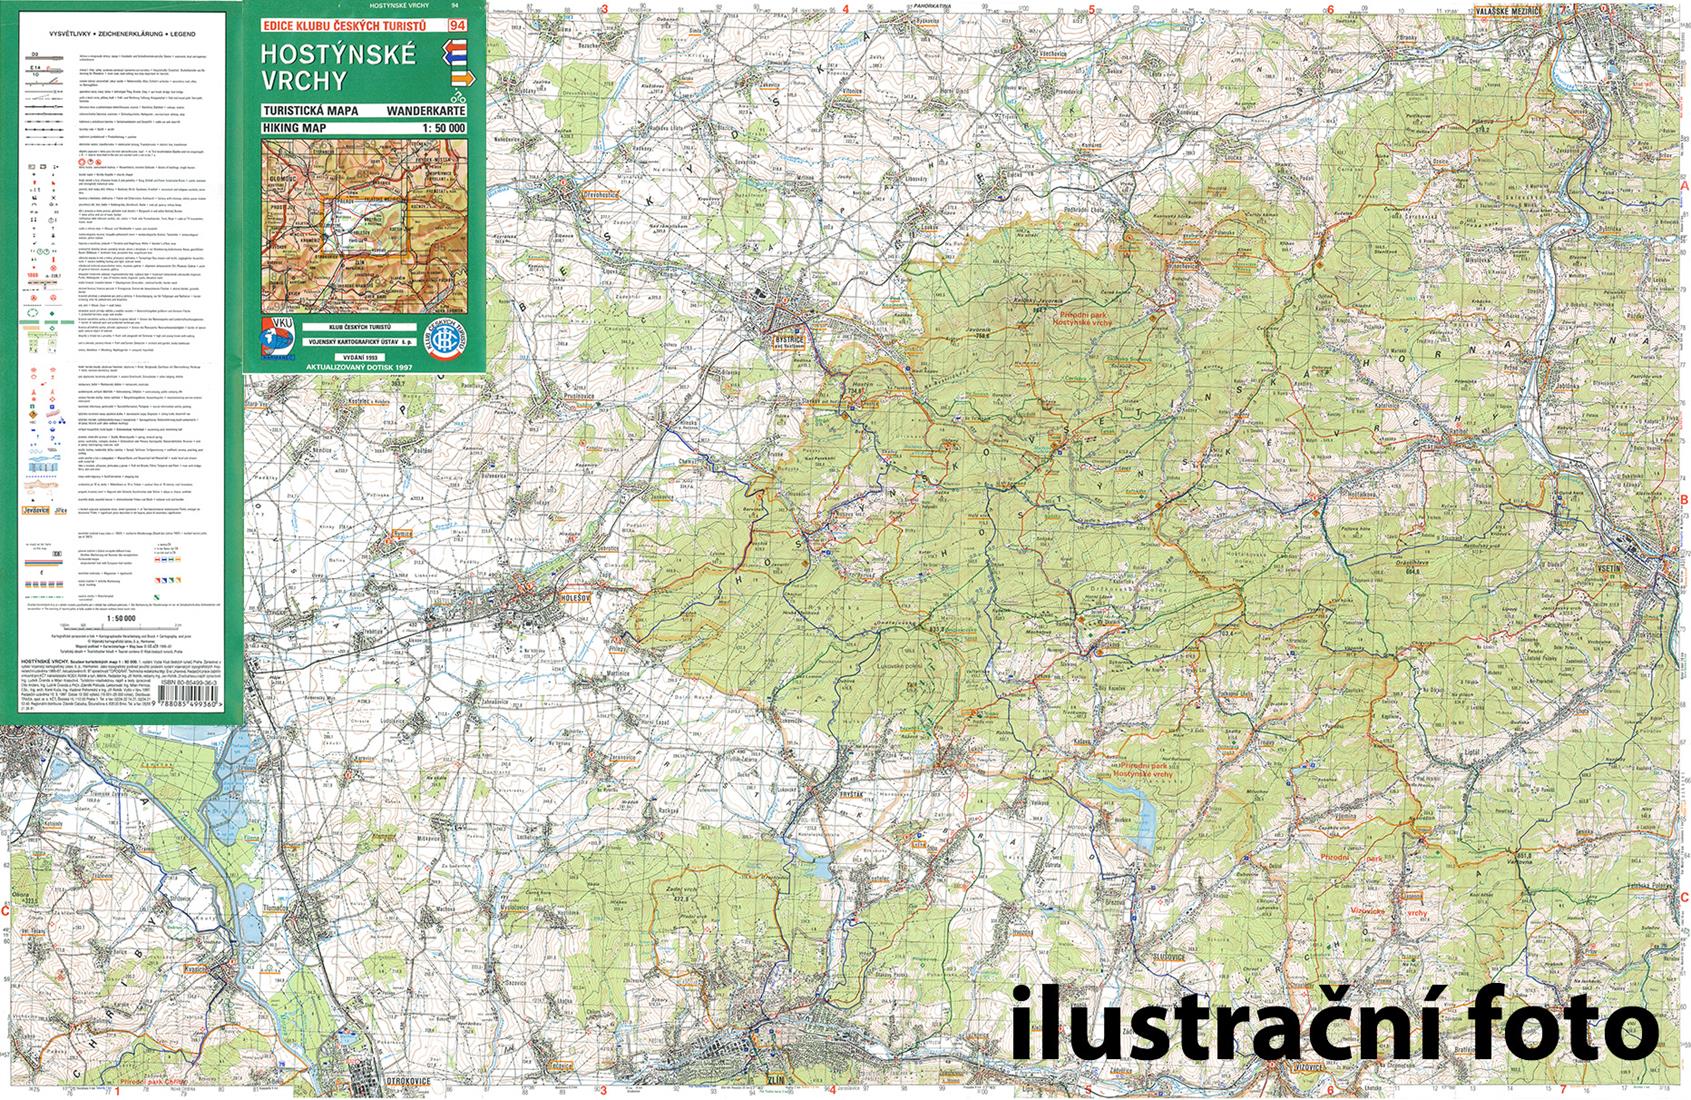 Nástěnná mapa Okolí Brna - Slavkovské bojiště a Ždánický les - turistická (87)